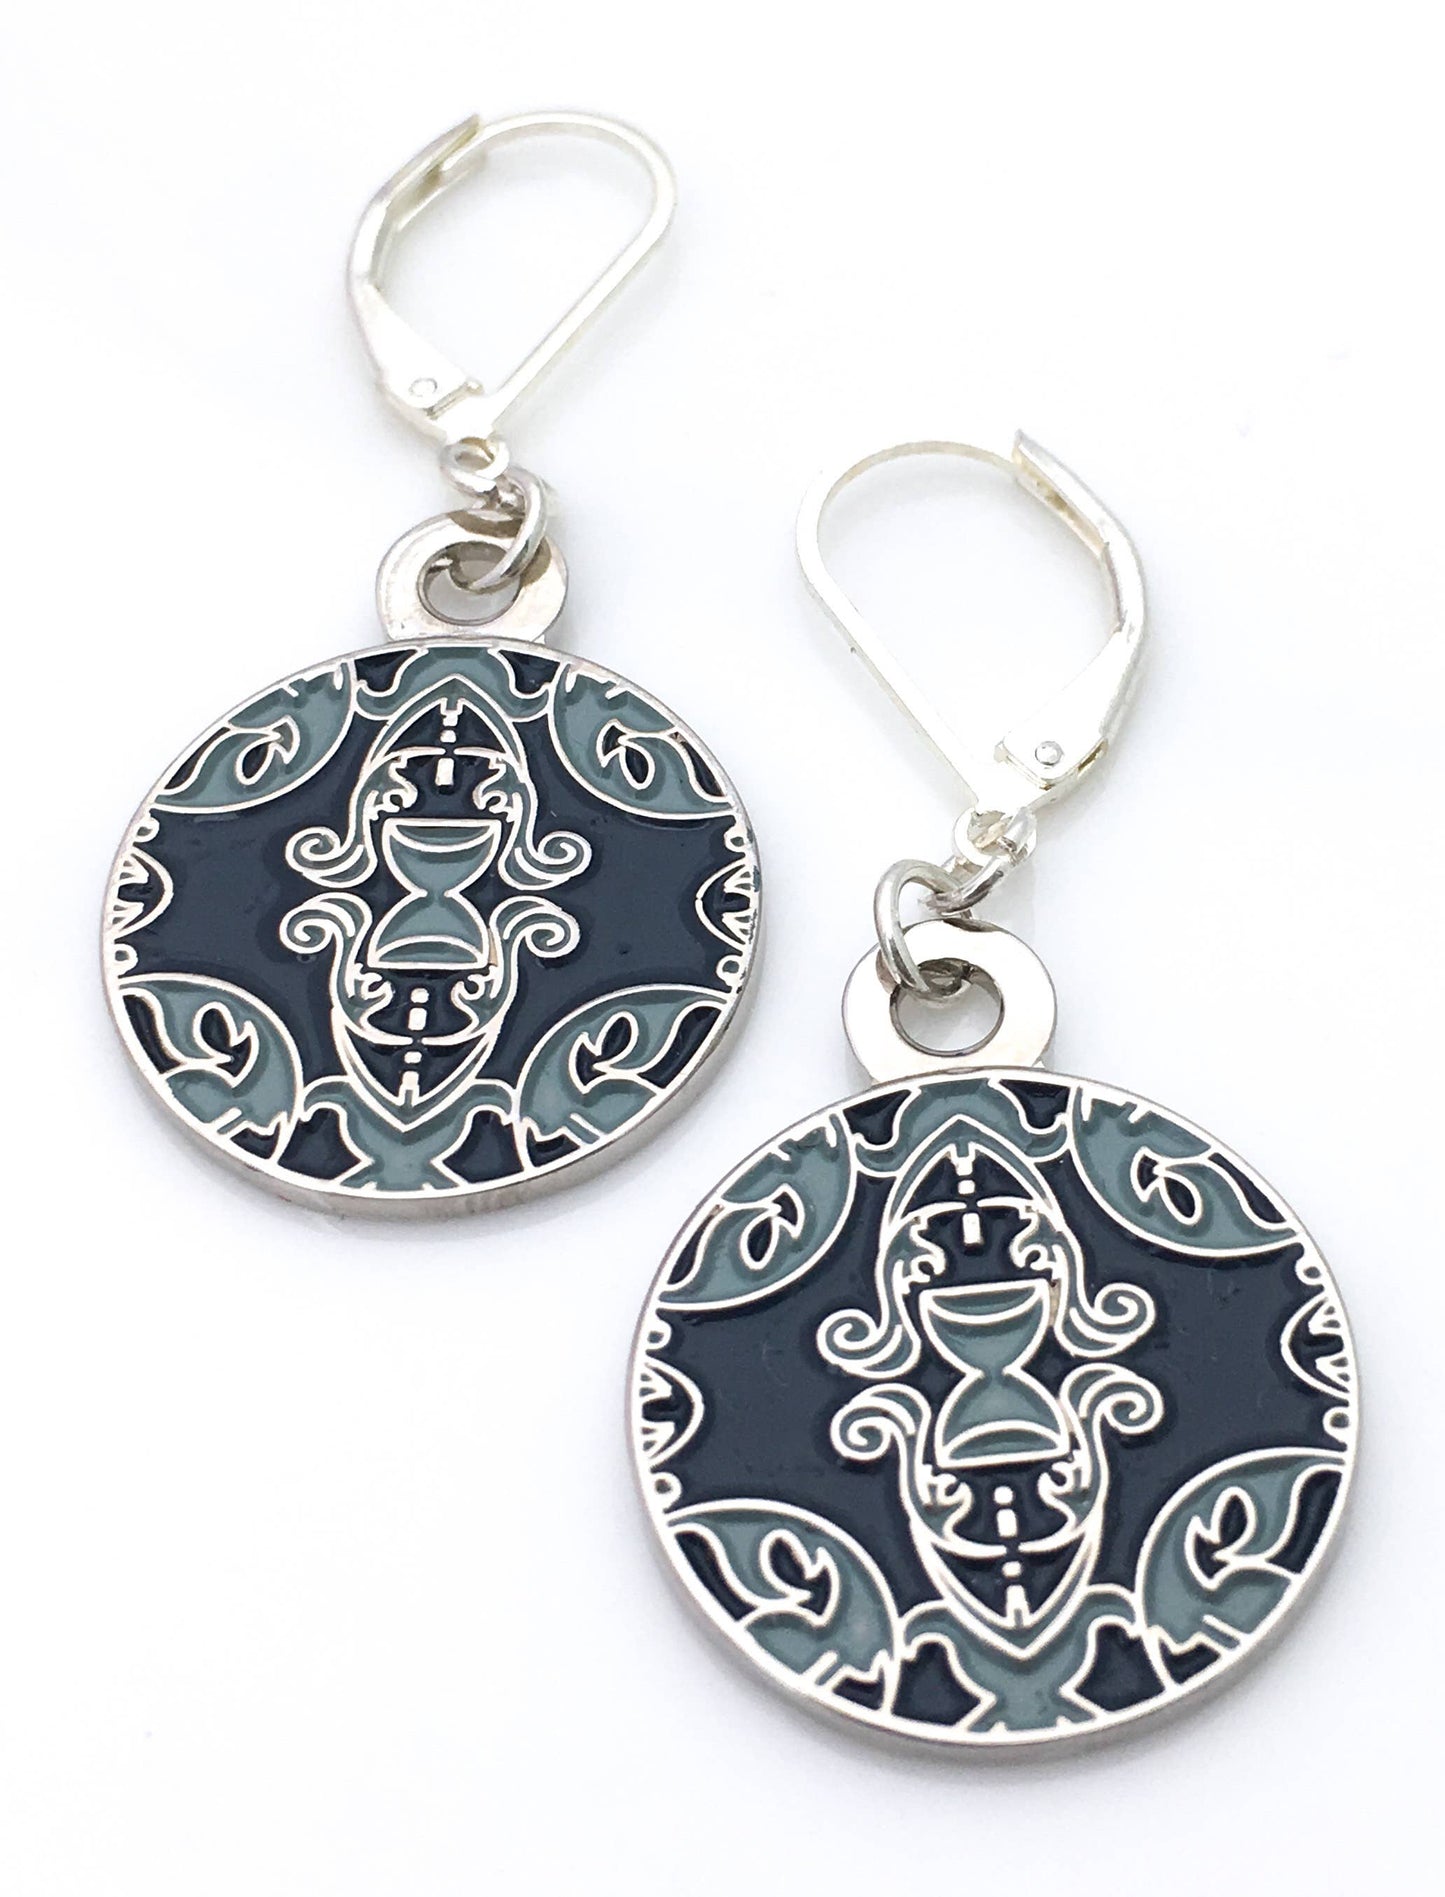 Ornate round enamel earrings in gray